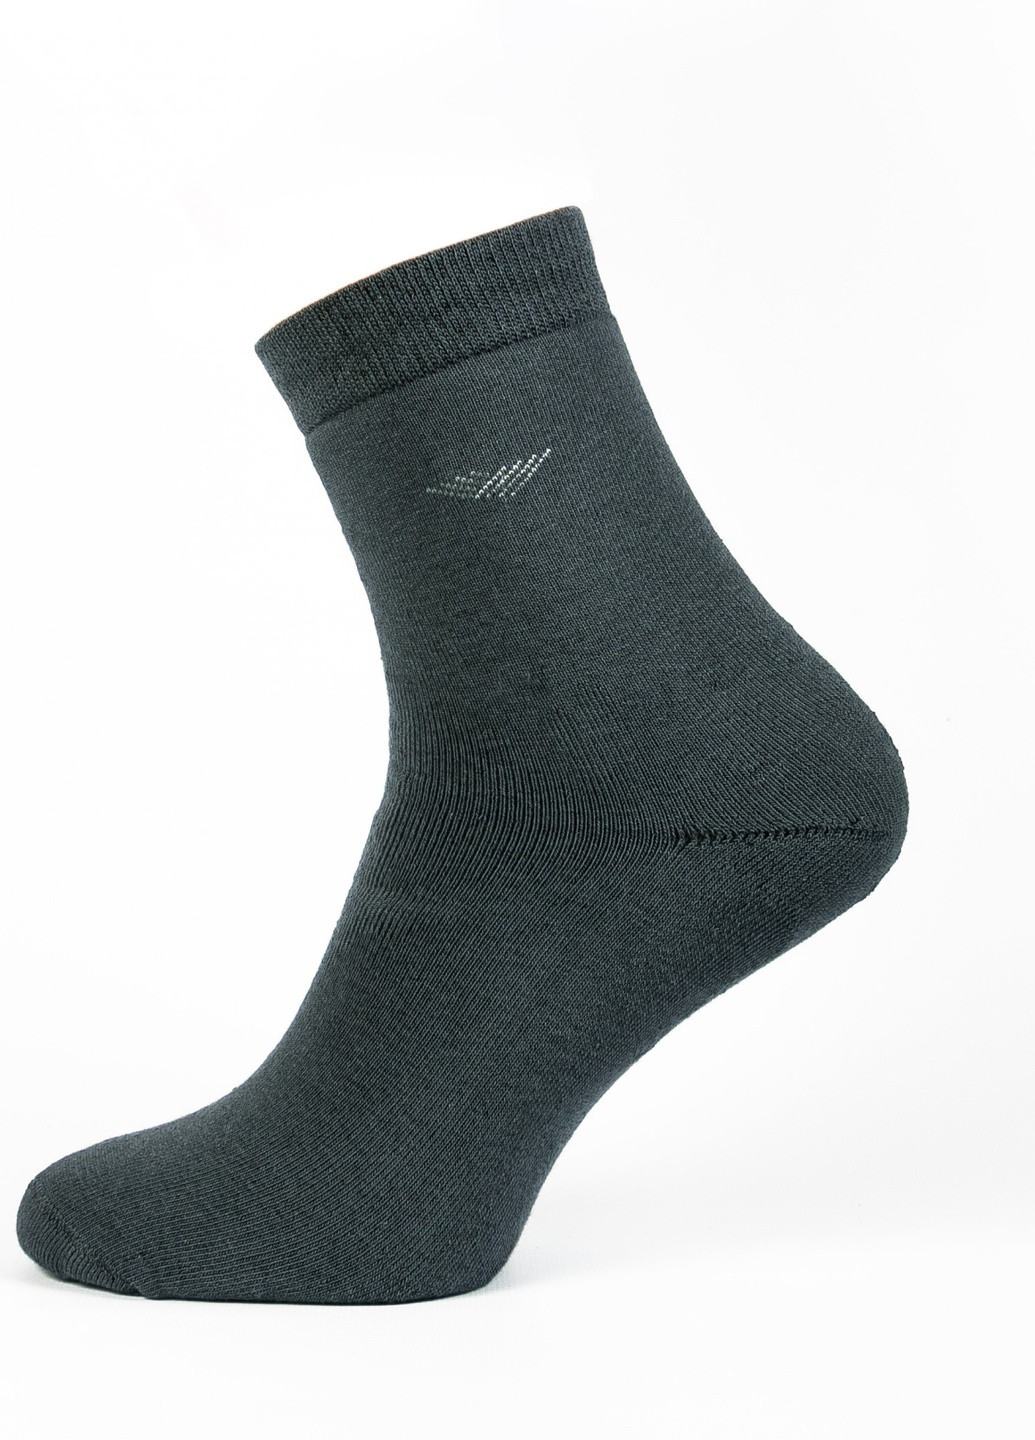 Шкарпетки чоловічі ТМ "Нова пара" плюш 411 НОВА ПАРА середня висота (257108330)